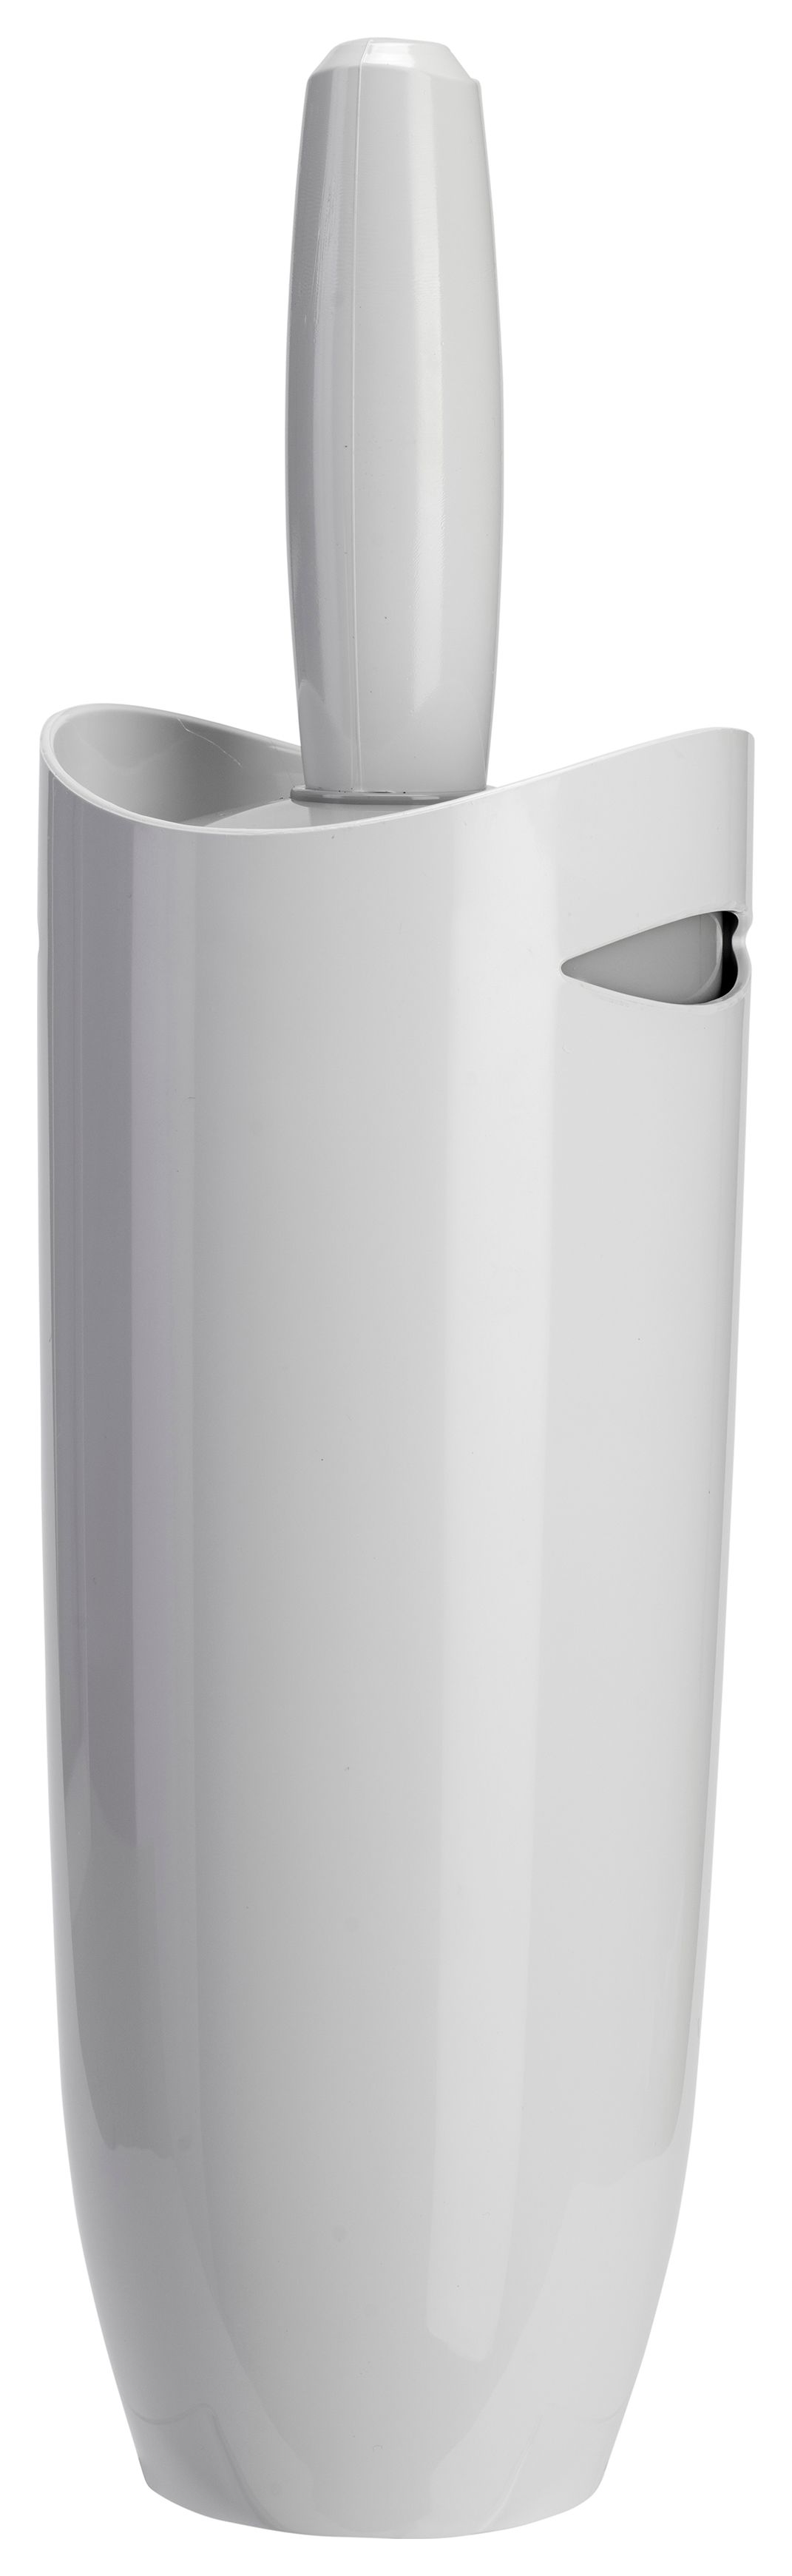 Image of Croydex Toilet Brush & Holder - White/Grey